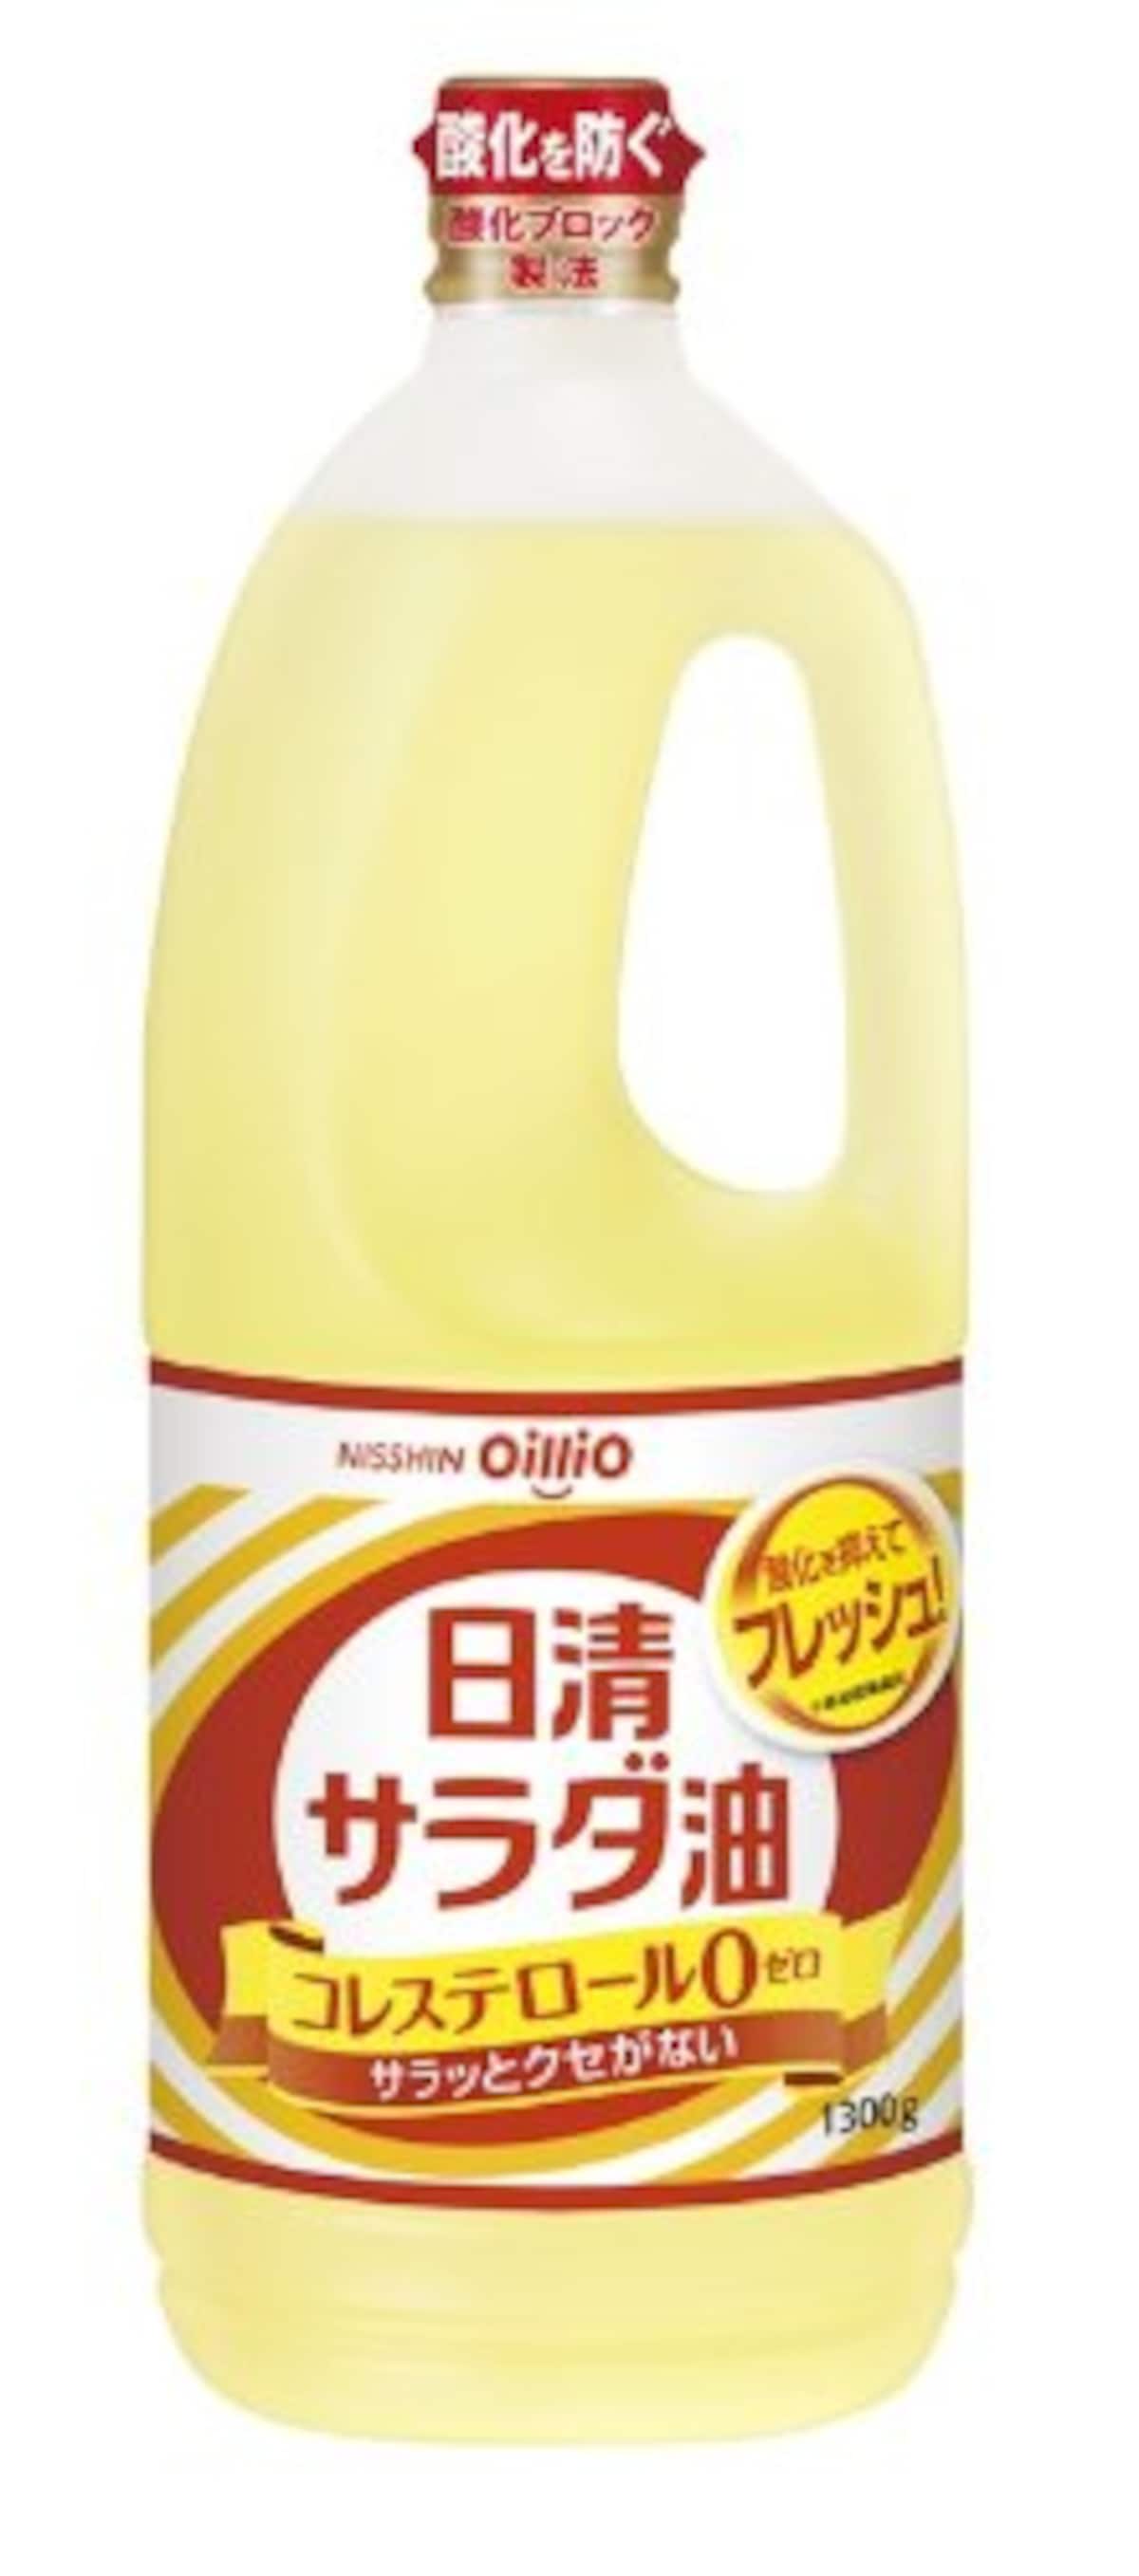 日清サラダ油   1300g